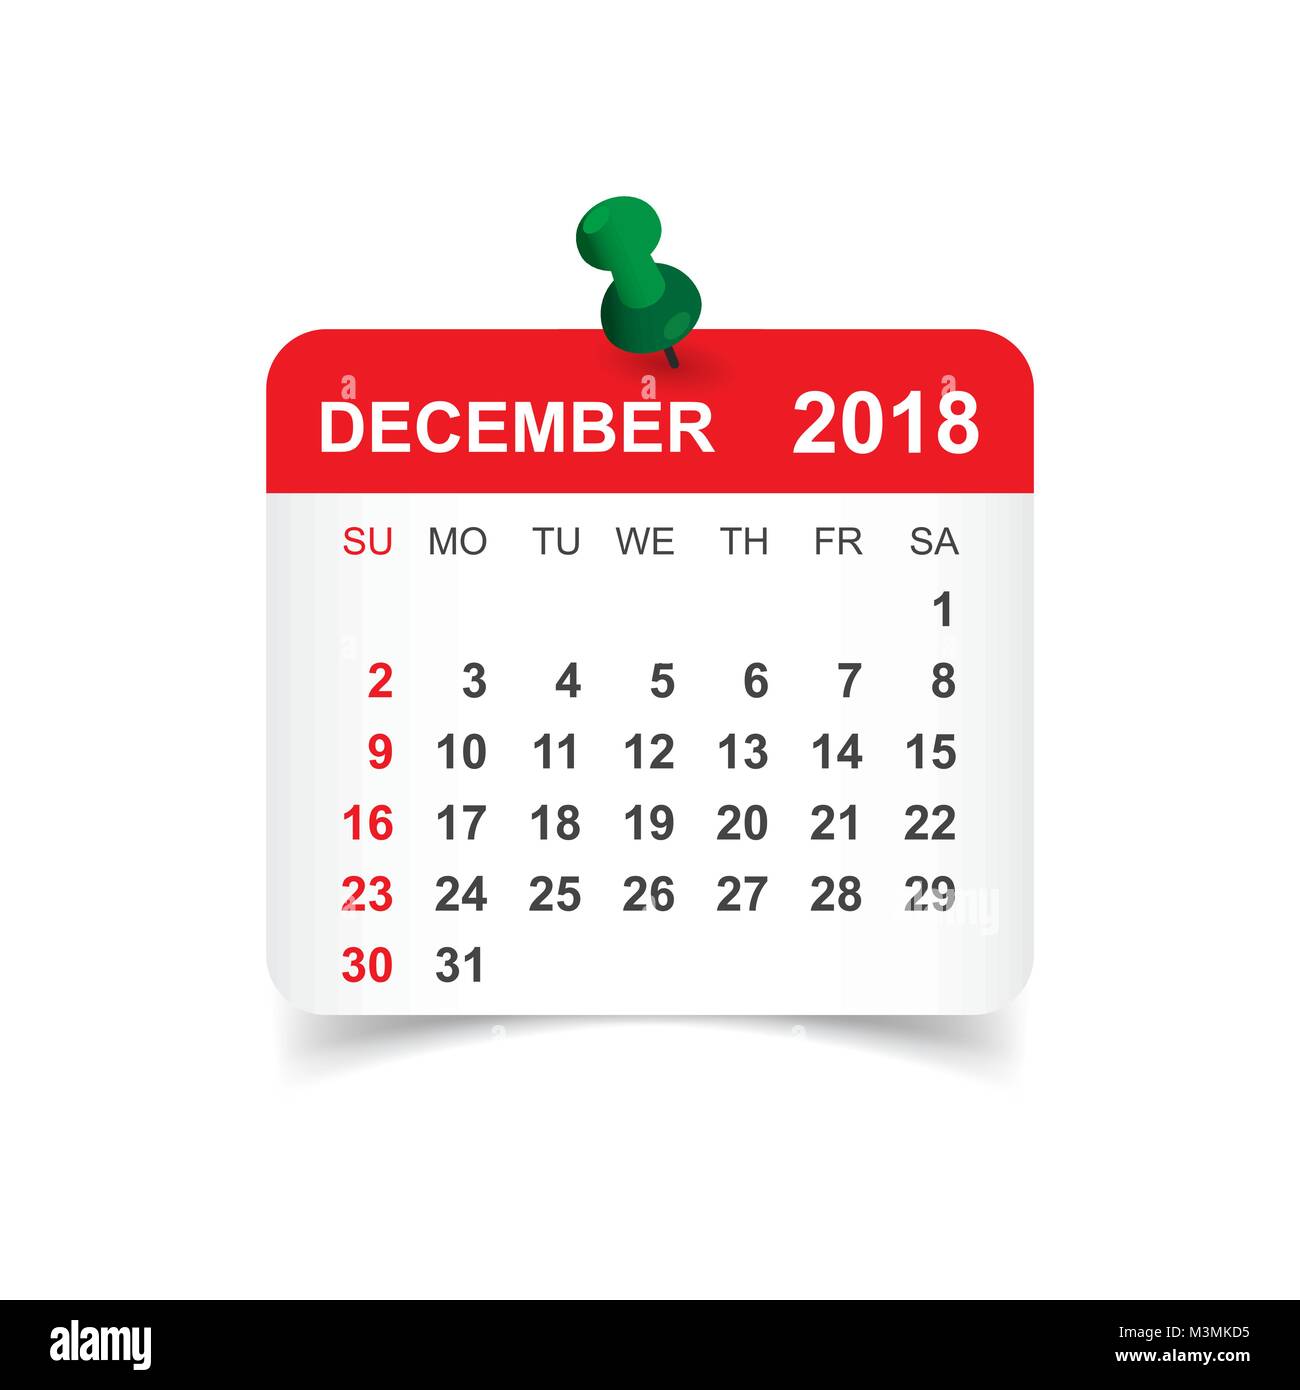 free-download-printable-december-2018-calendar-large-font-design